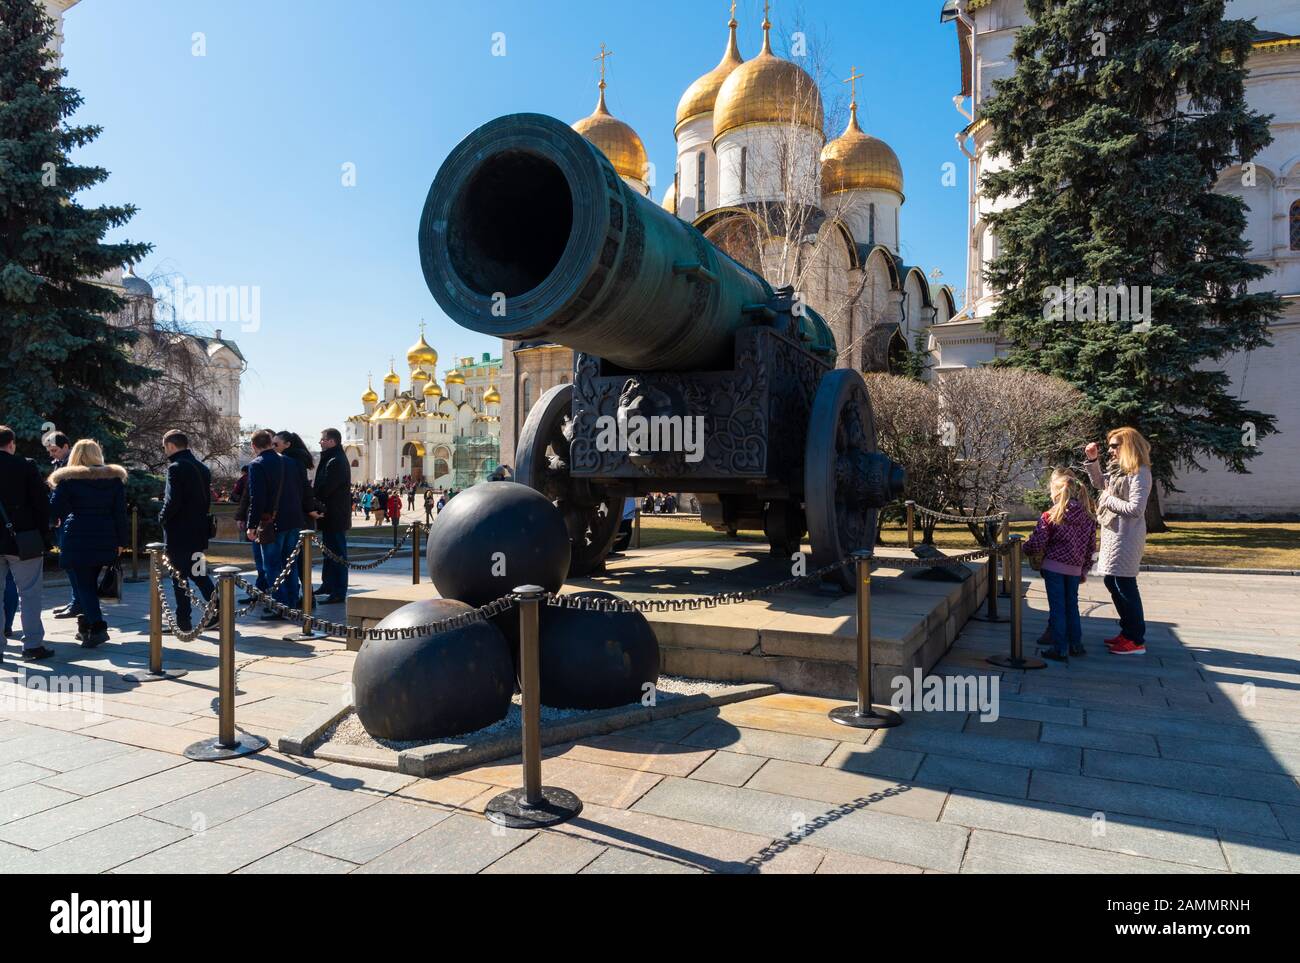 Mosca, RUSSIA-APILI14 2018: Lo Zar Cannon in mostra sui terreni del Cremlino di Mosca. E' un monumento dell'arte di fusione dell'artiglieria russa nel campo dei Foto Stock